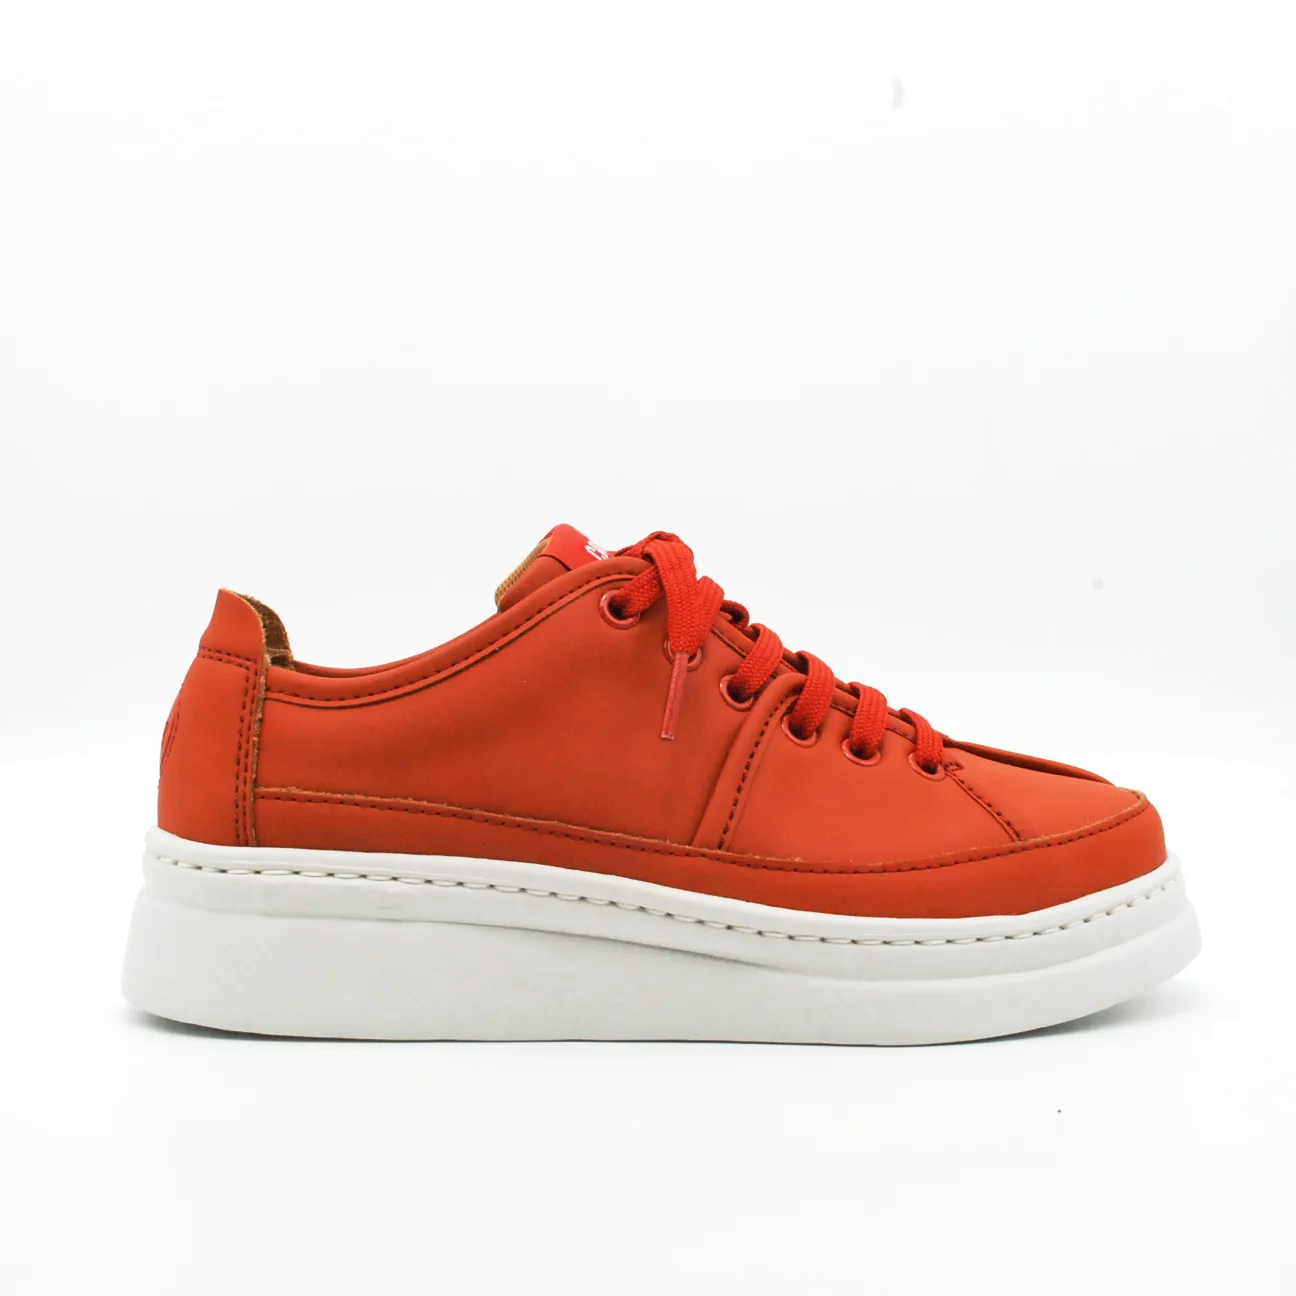 sneakers-camper-twins-in-pelle-36-arancione-pelle-sneakers.png